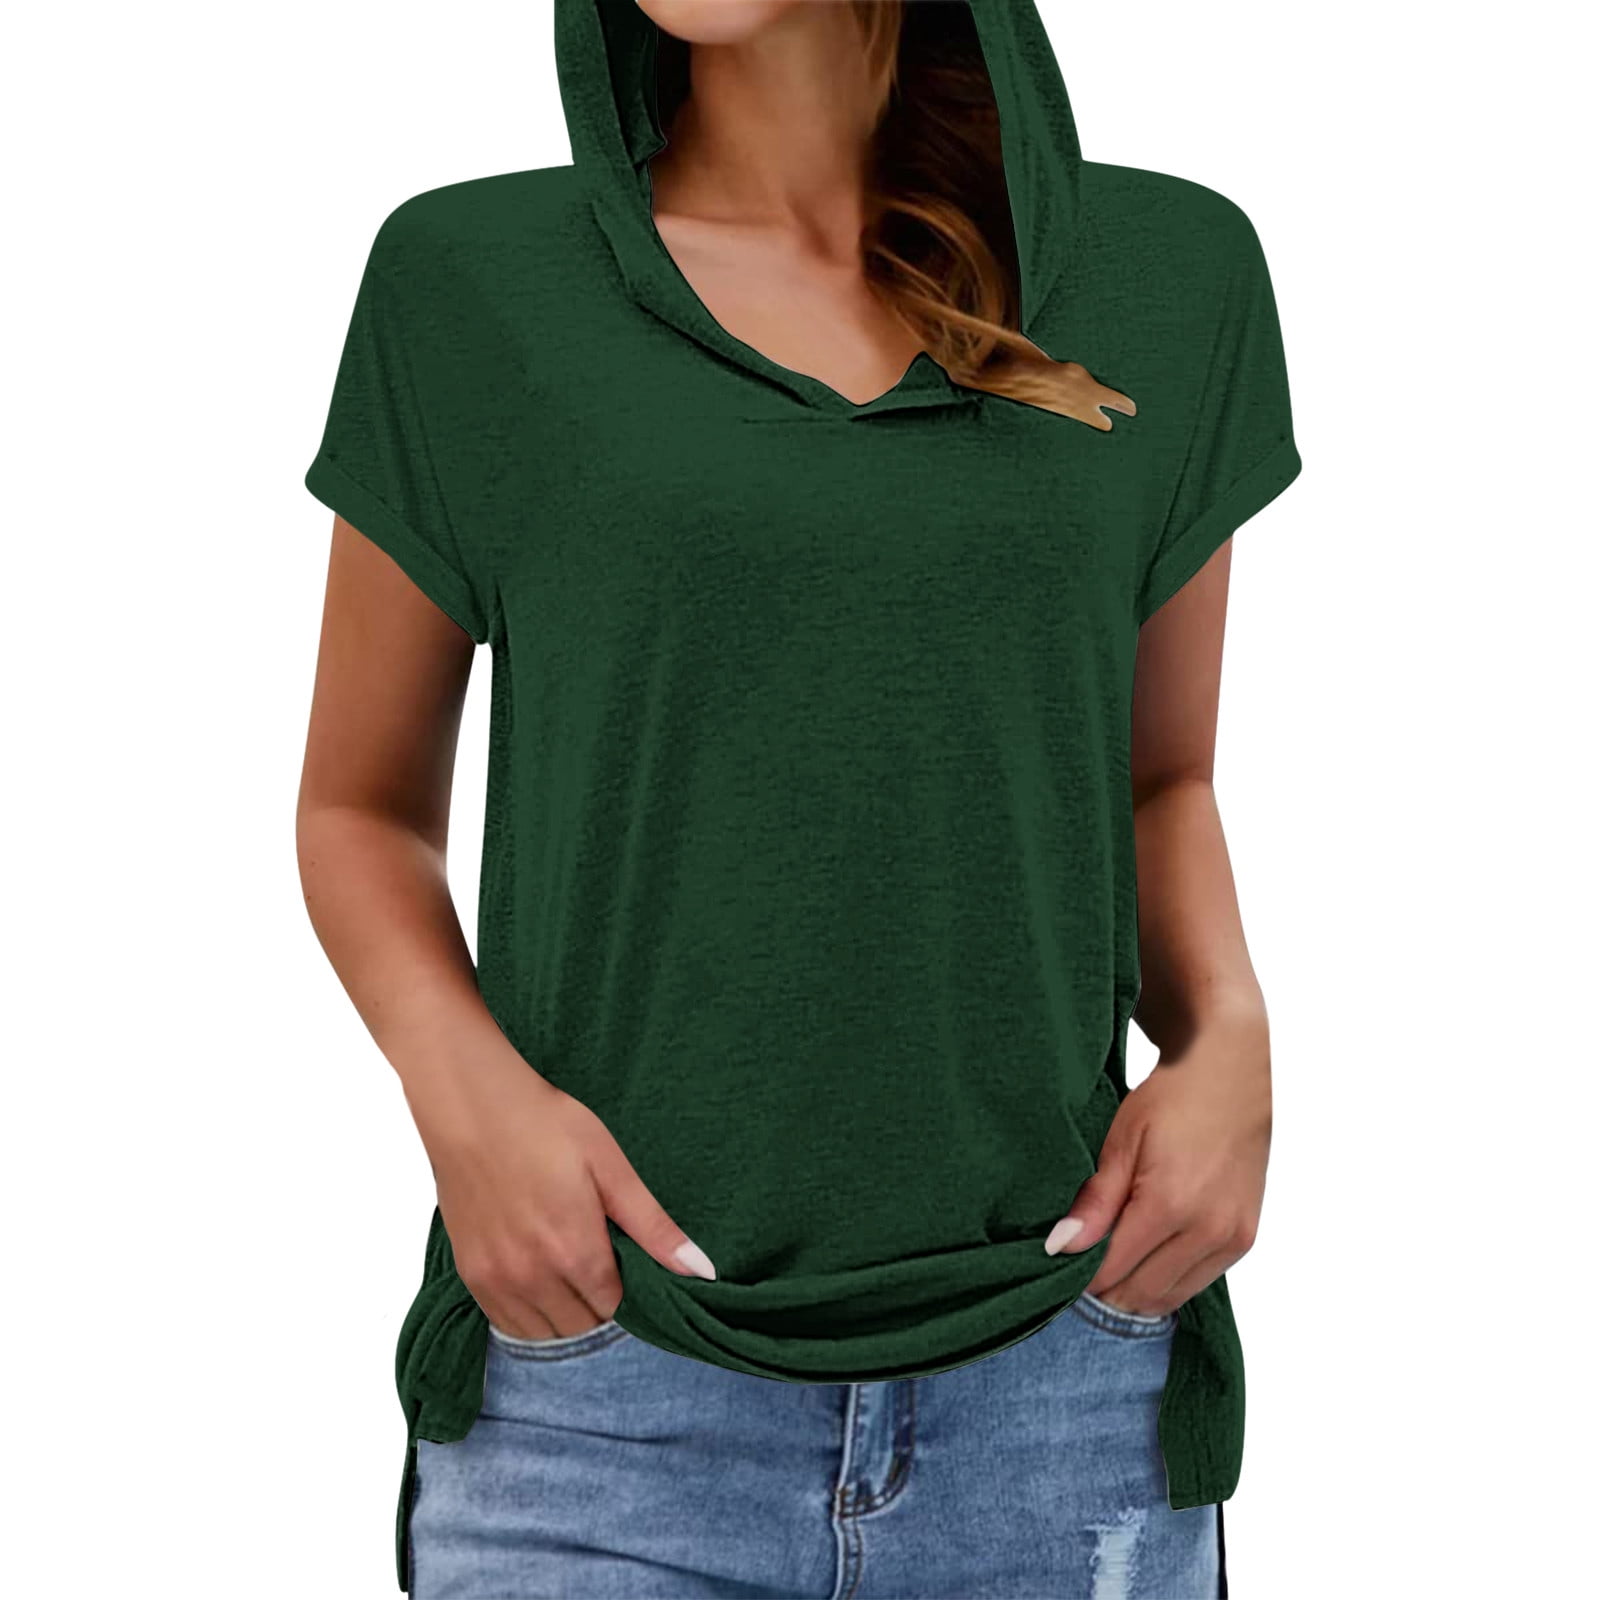 adviicd Army Green Kobe Bryant Shirt Tee Tshirt Womens Plus Size